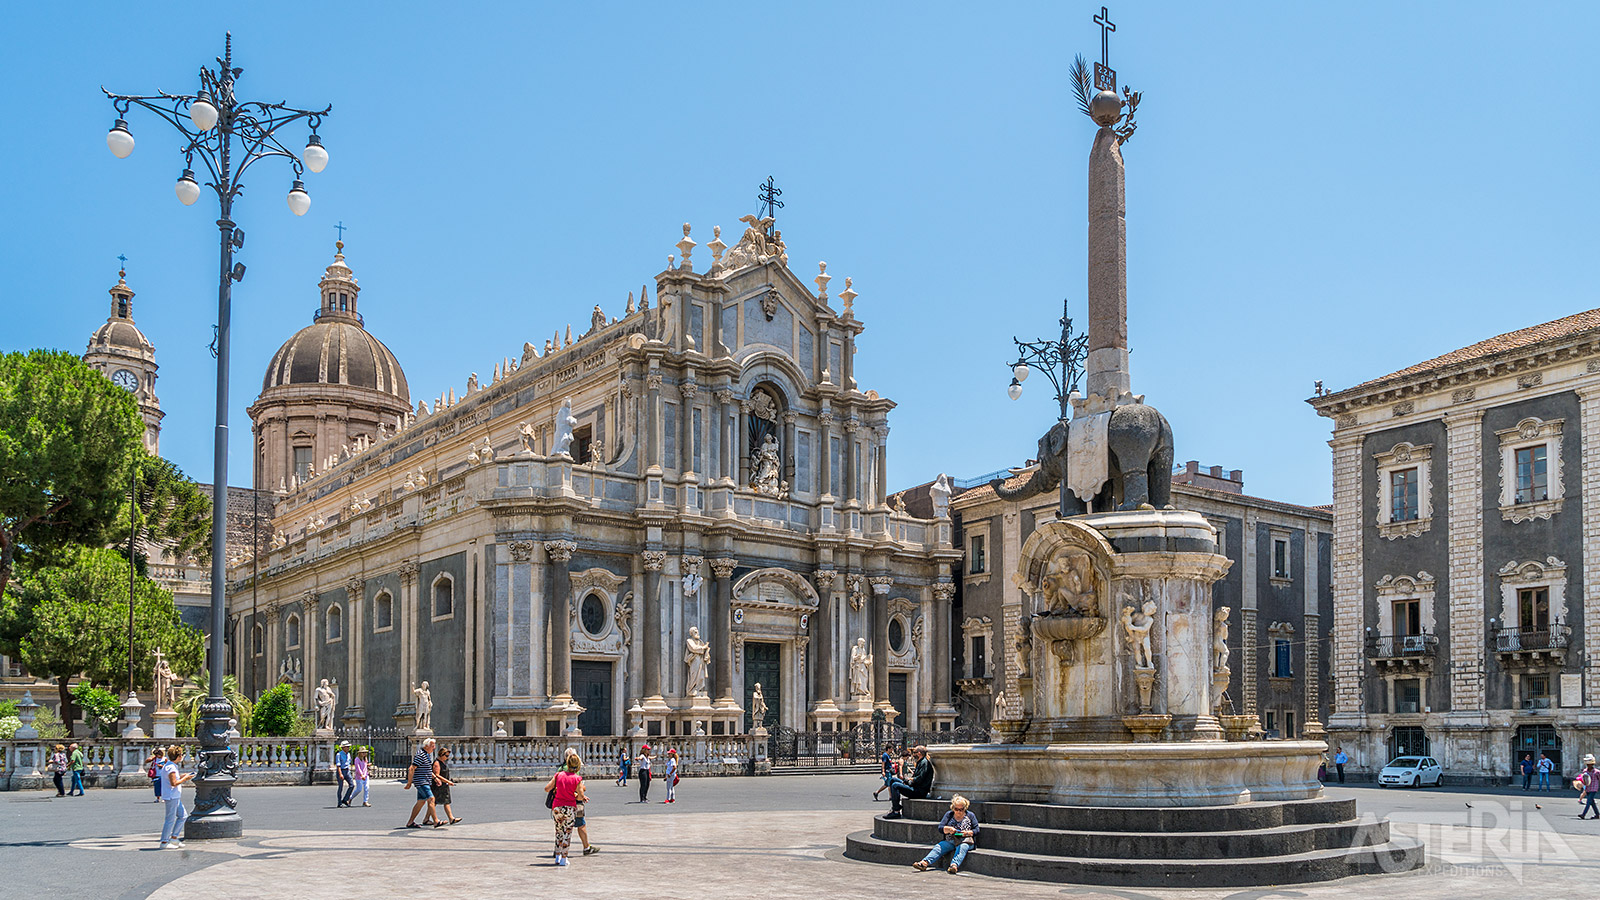 Piazza del Duomo met de olifantenfontein, het symbool van de stad Catania